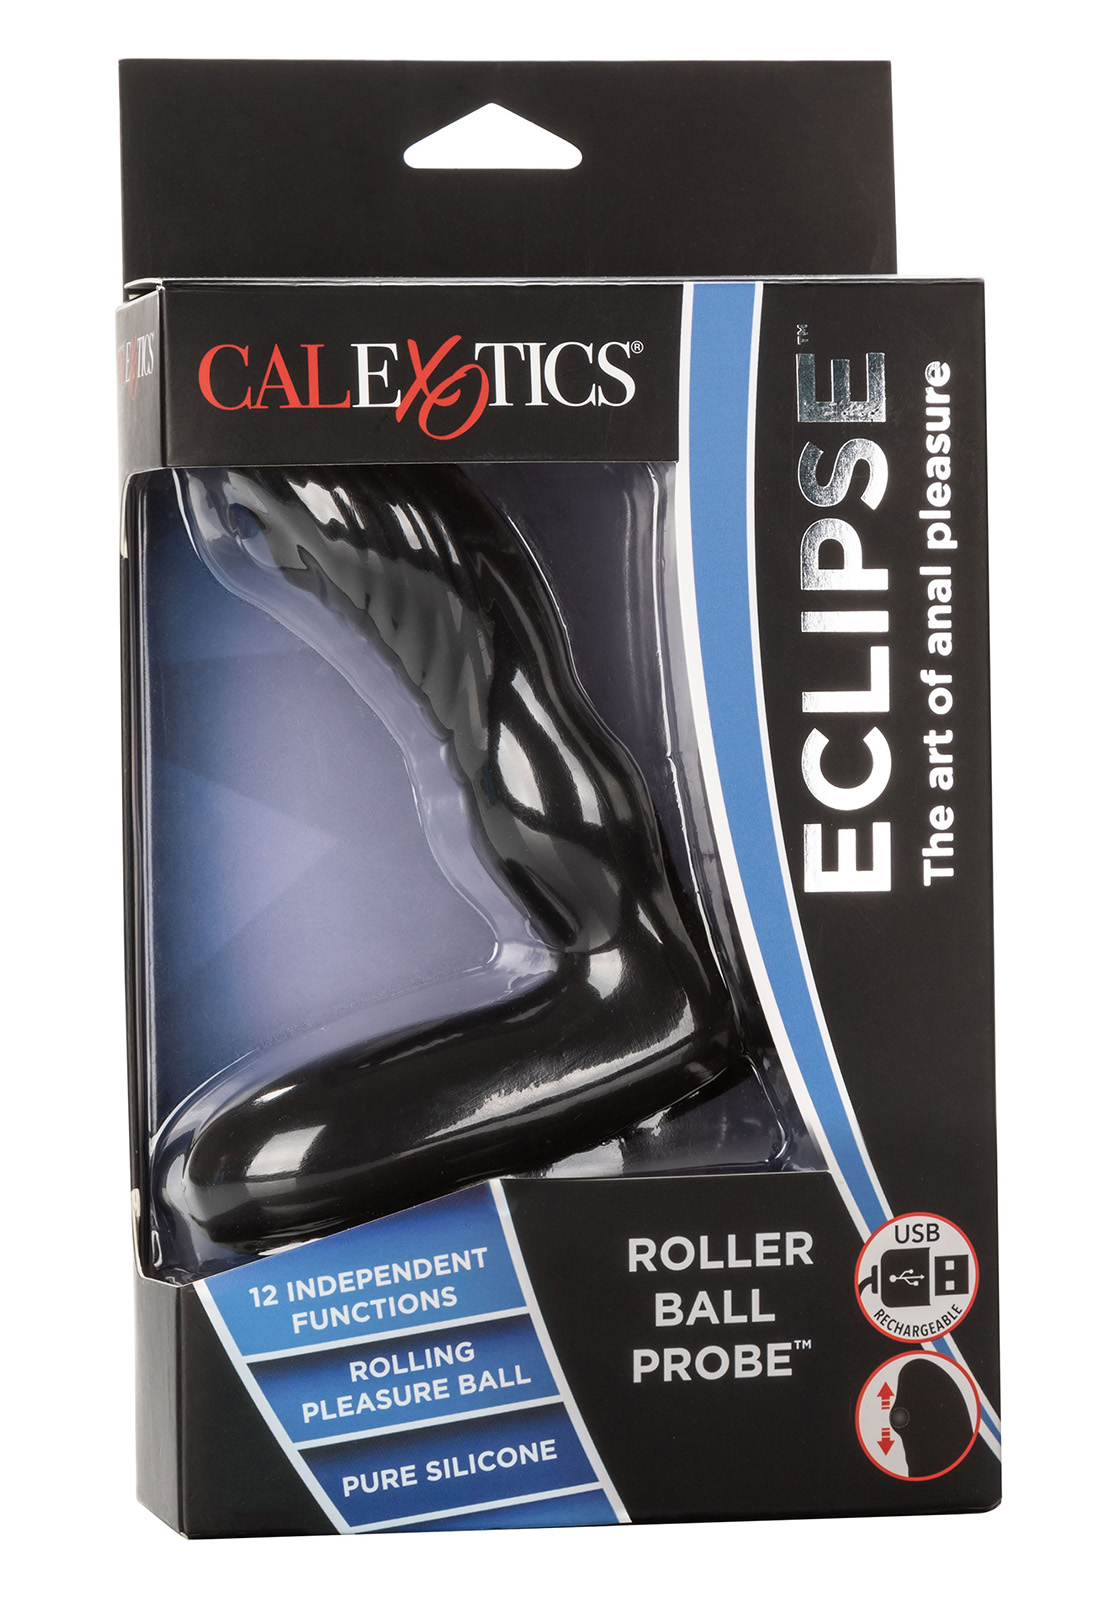 CalEx: Eclipse Roller Ball Probe